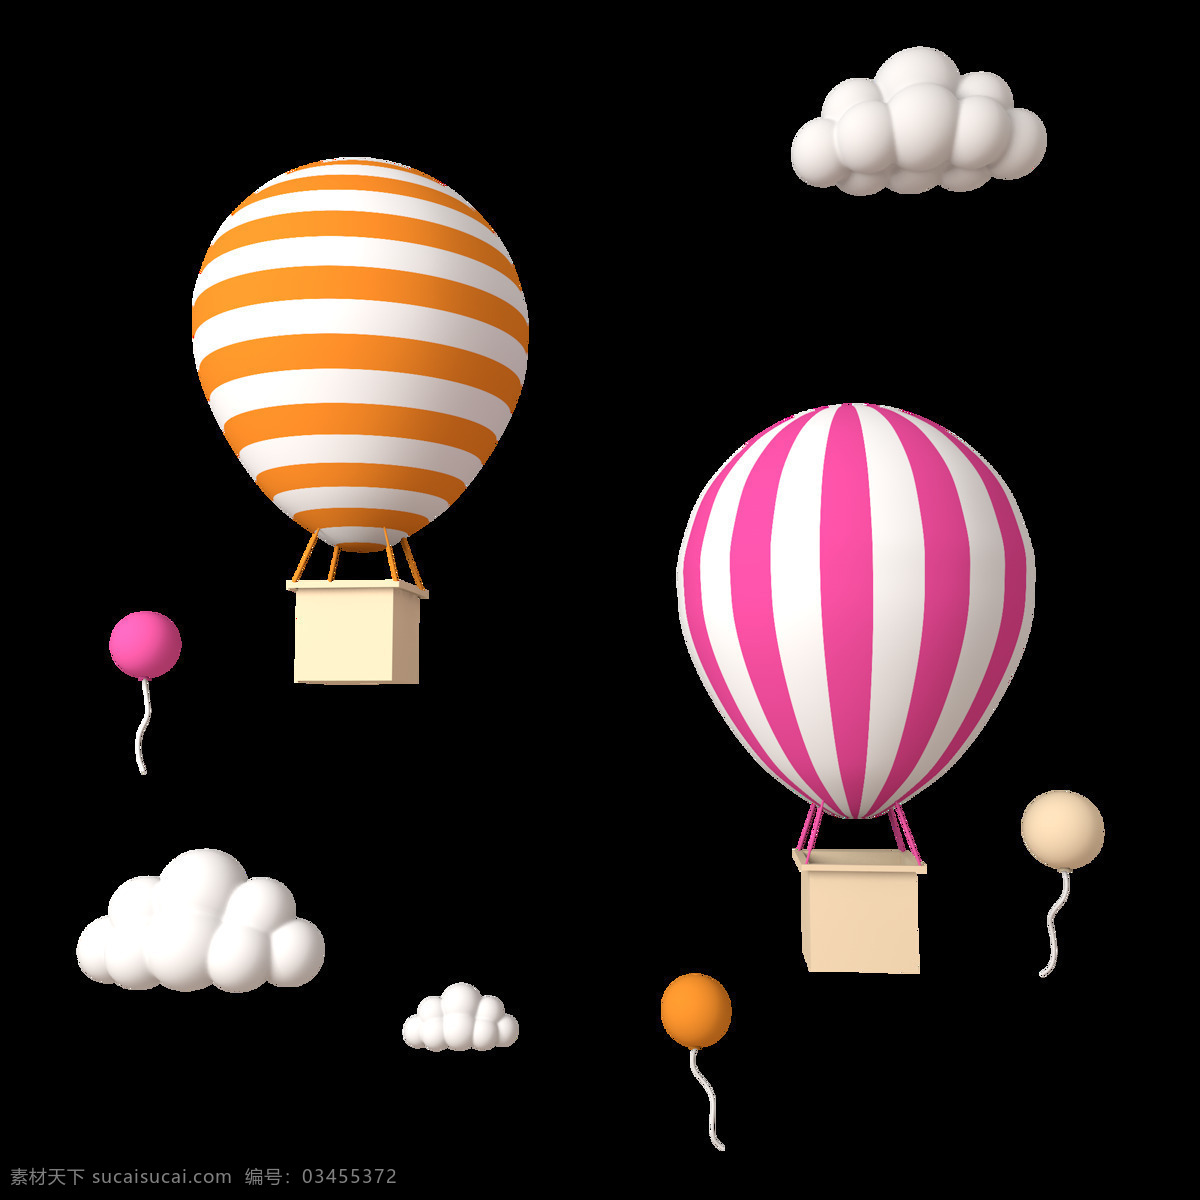 手绘 热气球 云朵 手绘热气球云 手绘热气球 手绘云朵 热气球云朵 照片